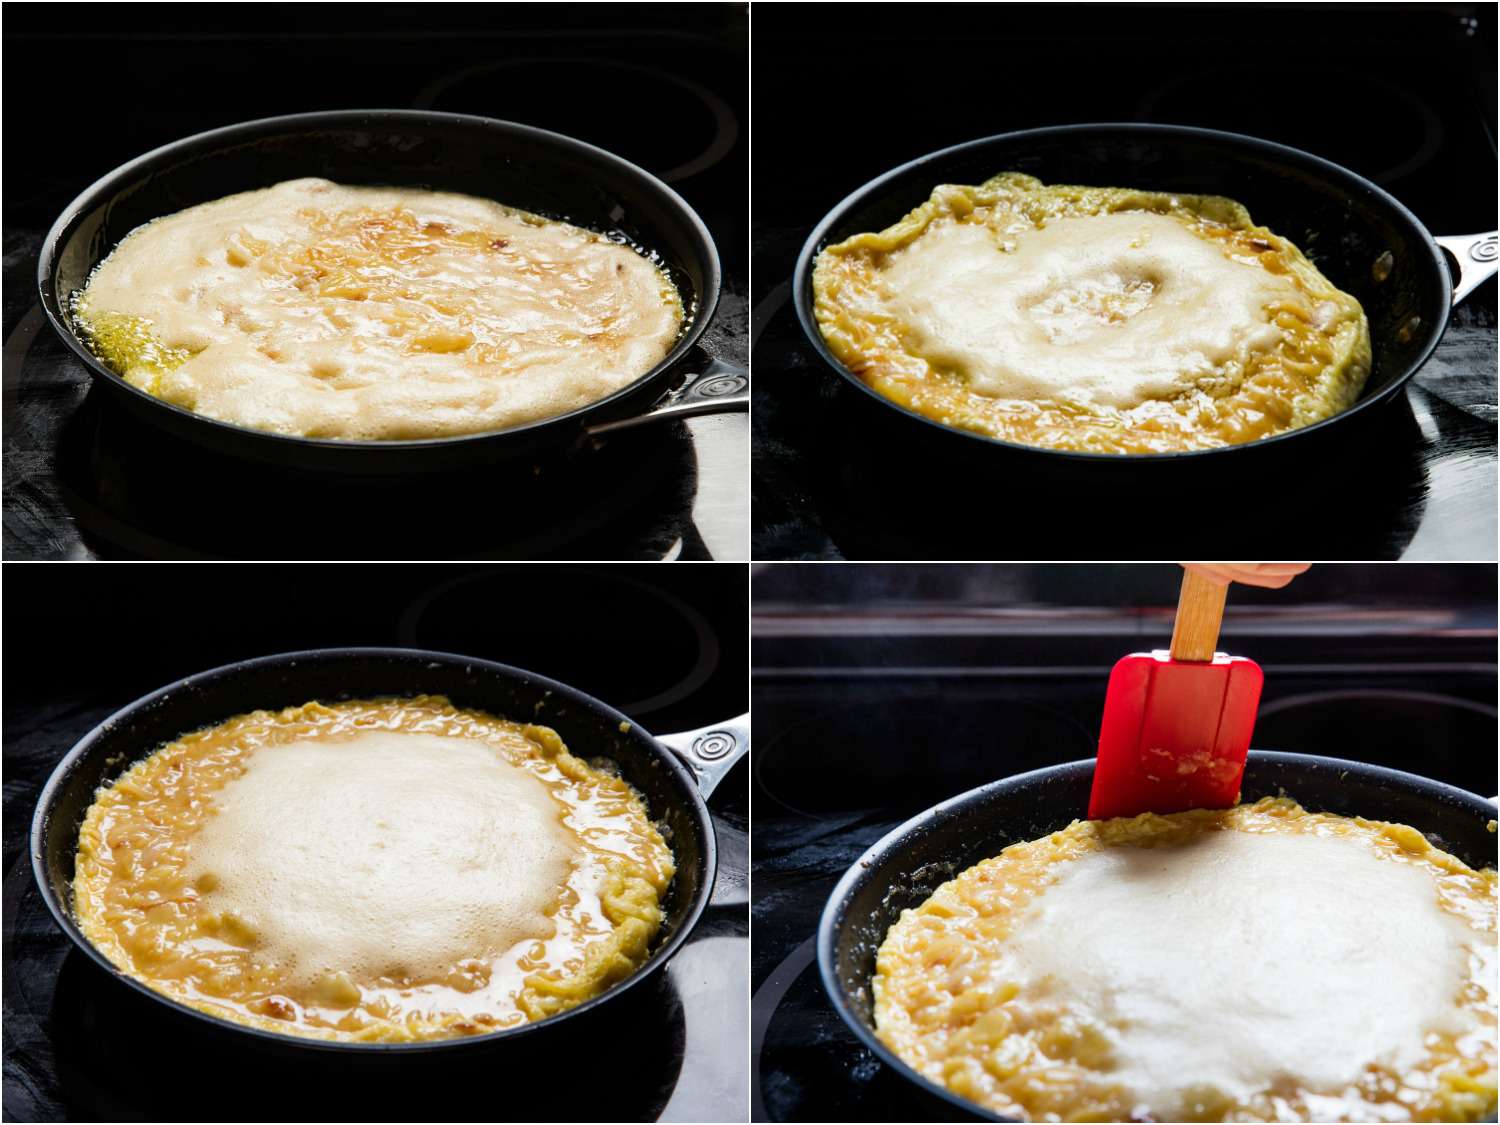 四张照片拼贴展示如何在煎锅中烹饪玉米饼española。鸡蛋中间有泡沫。厨师用抹刀把边缘弄松。gydF4y2Ba